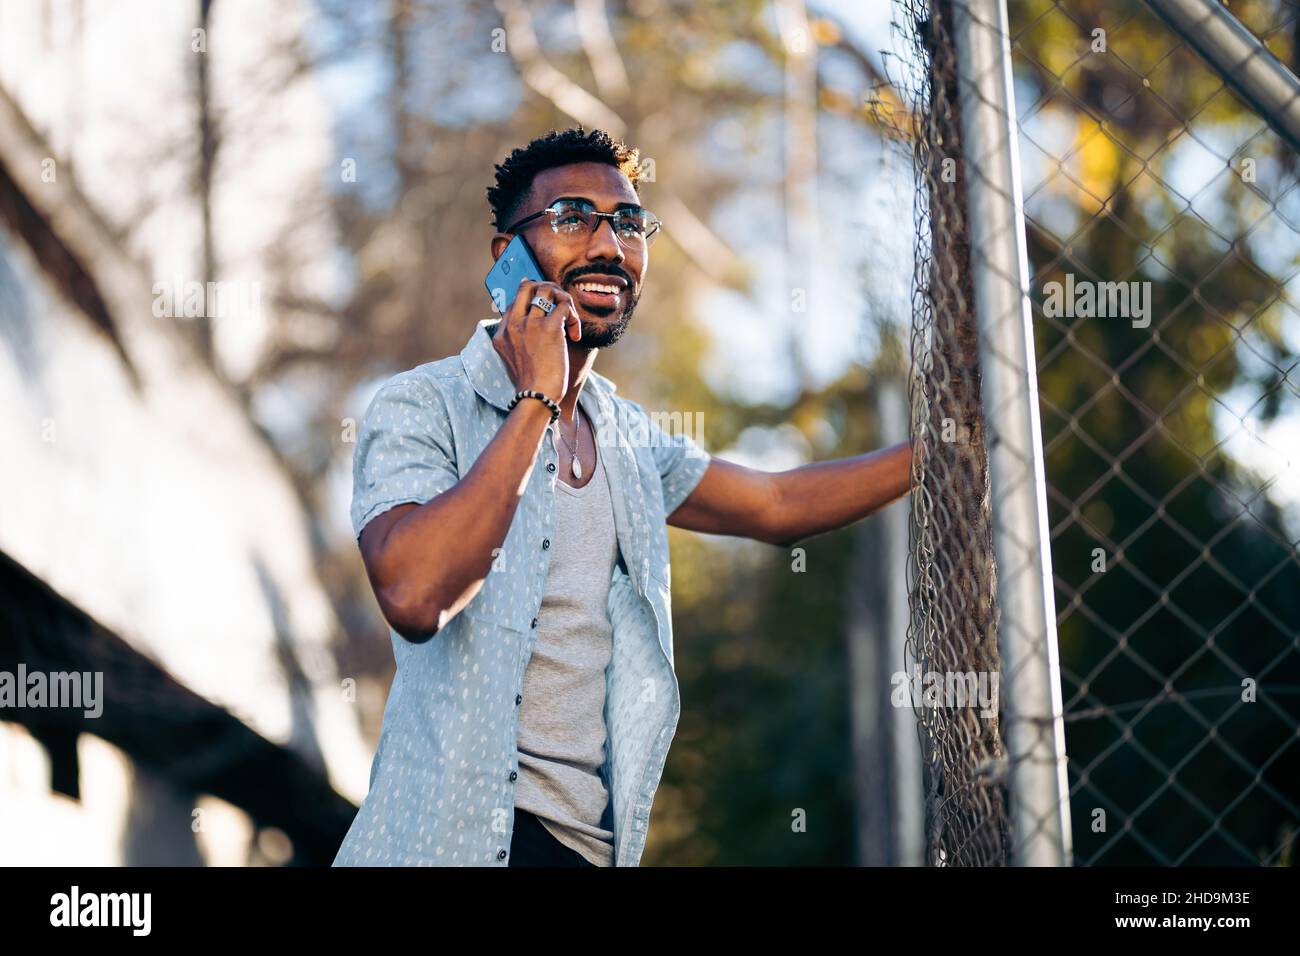 Beau afro homme en utilisant son smartphone dans la rue en souriant s'appuyant sur une clôture Banque D'Images